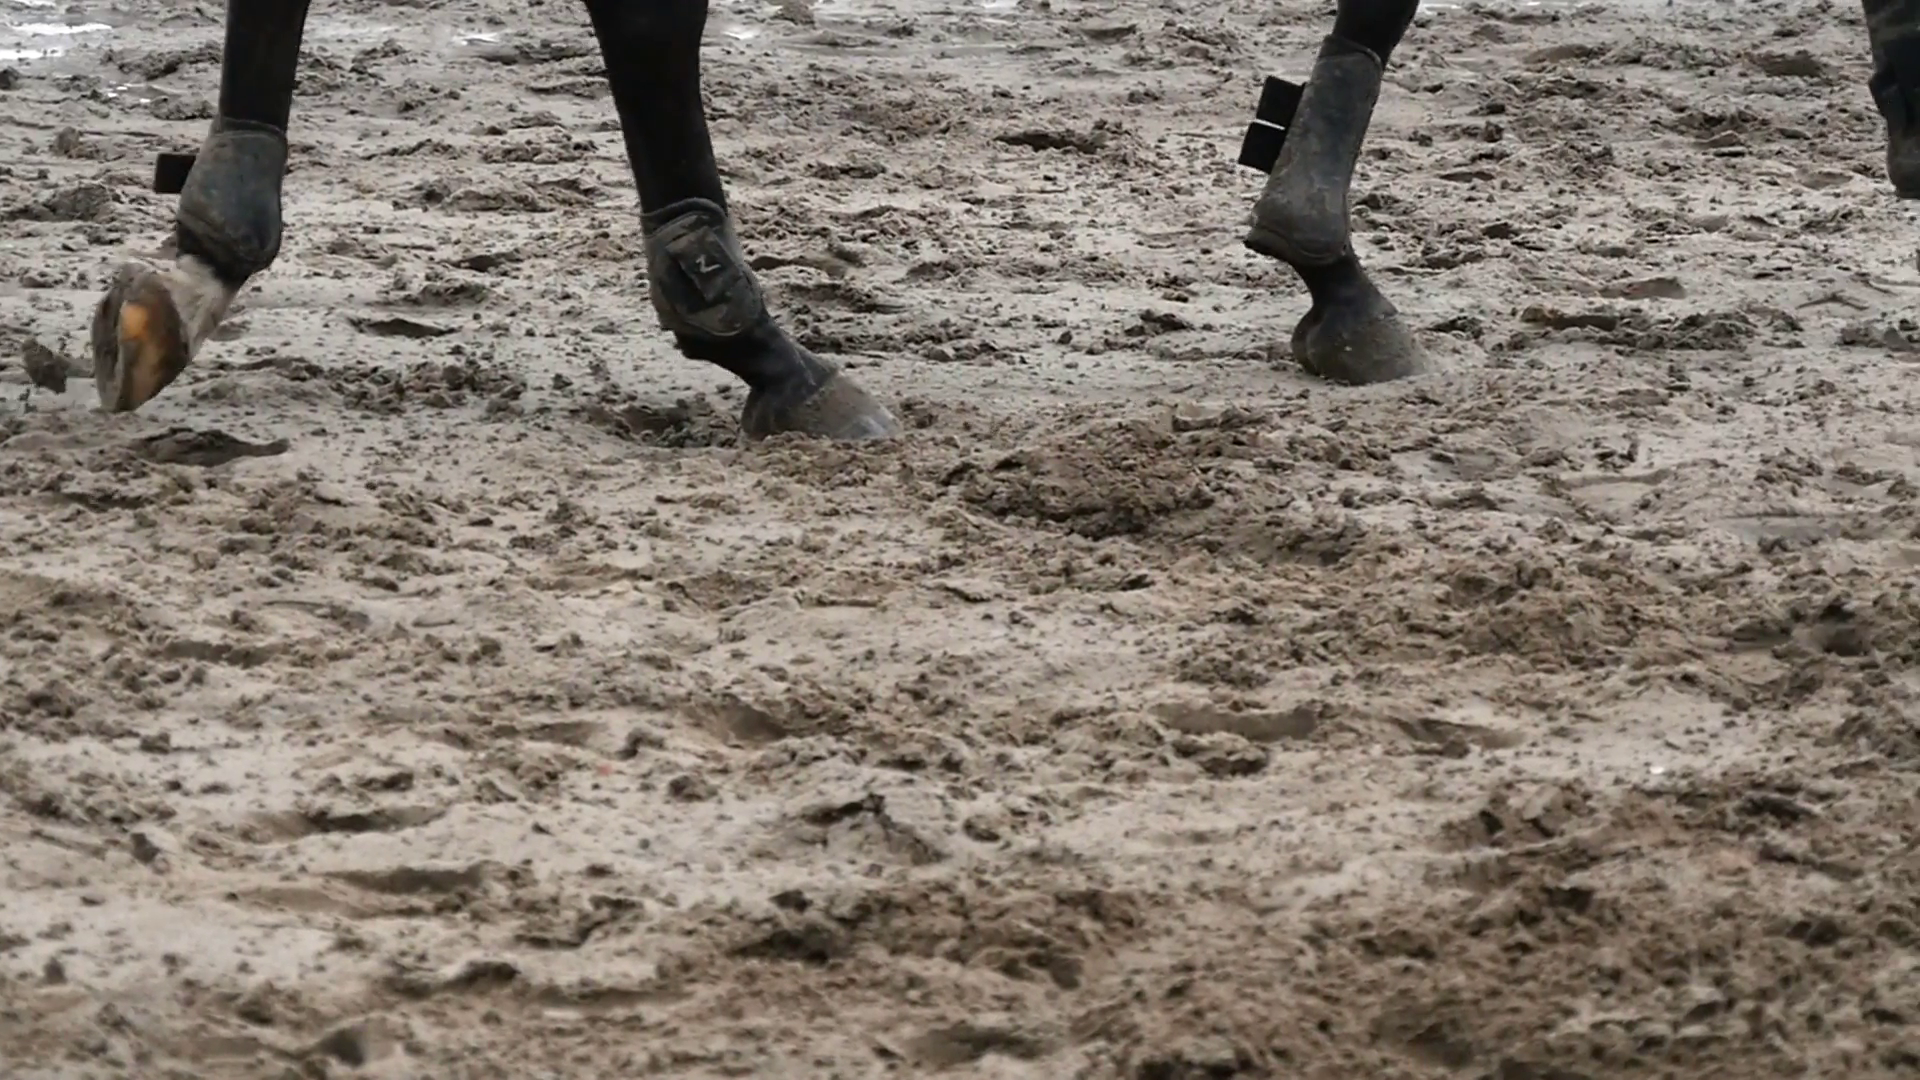 Foot of horse walking on mud. Close up of legs walking kicking up ...